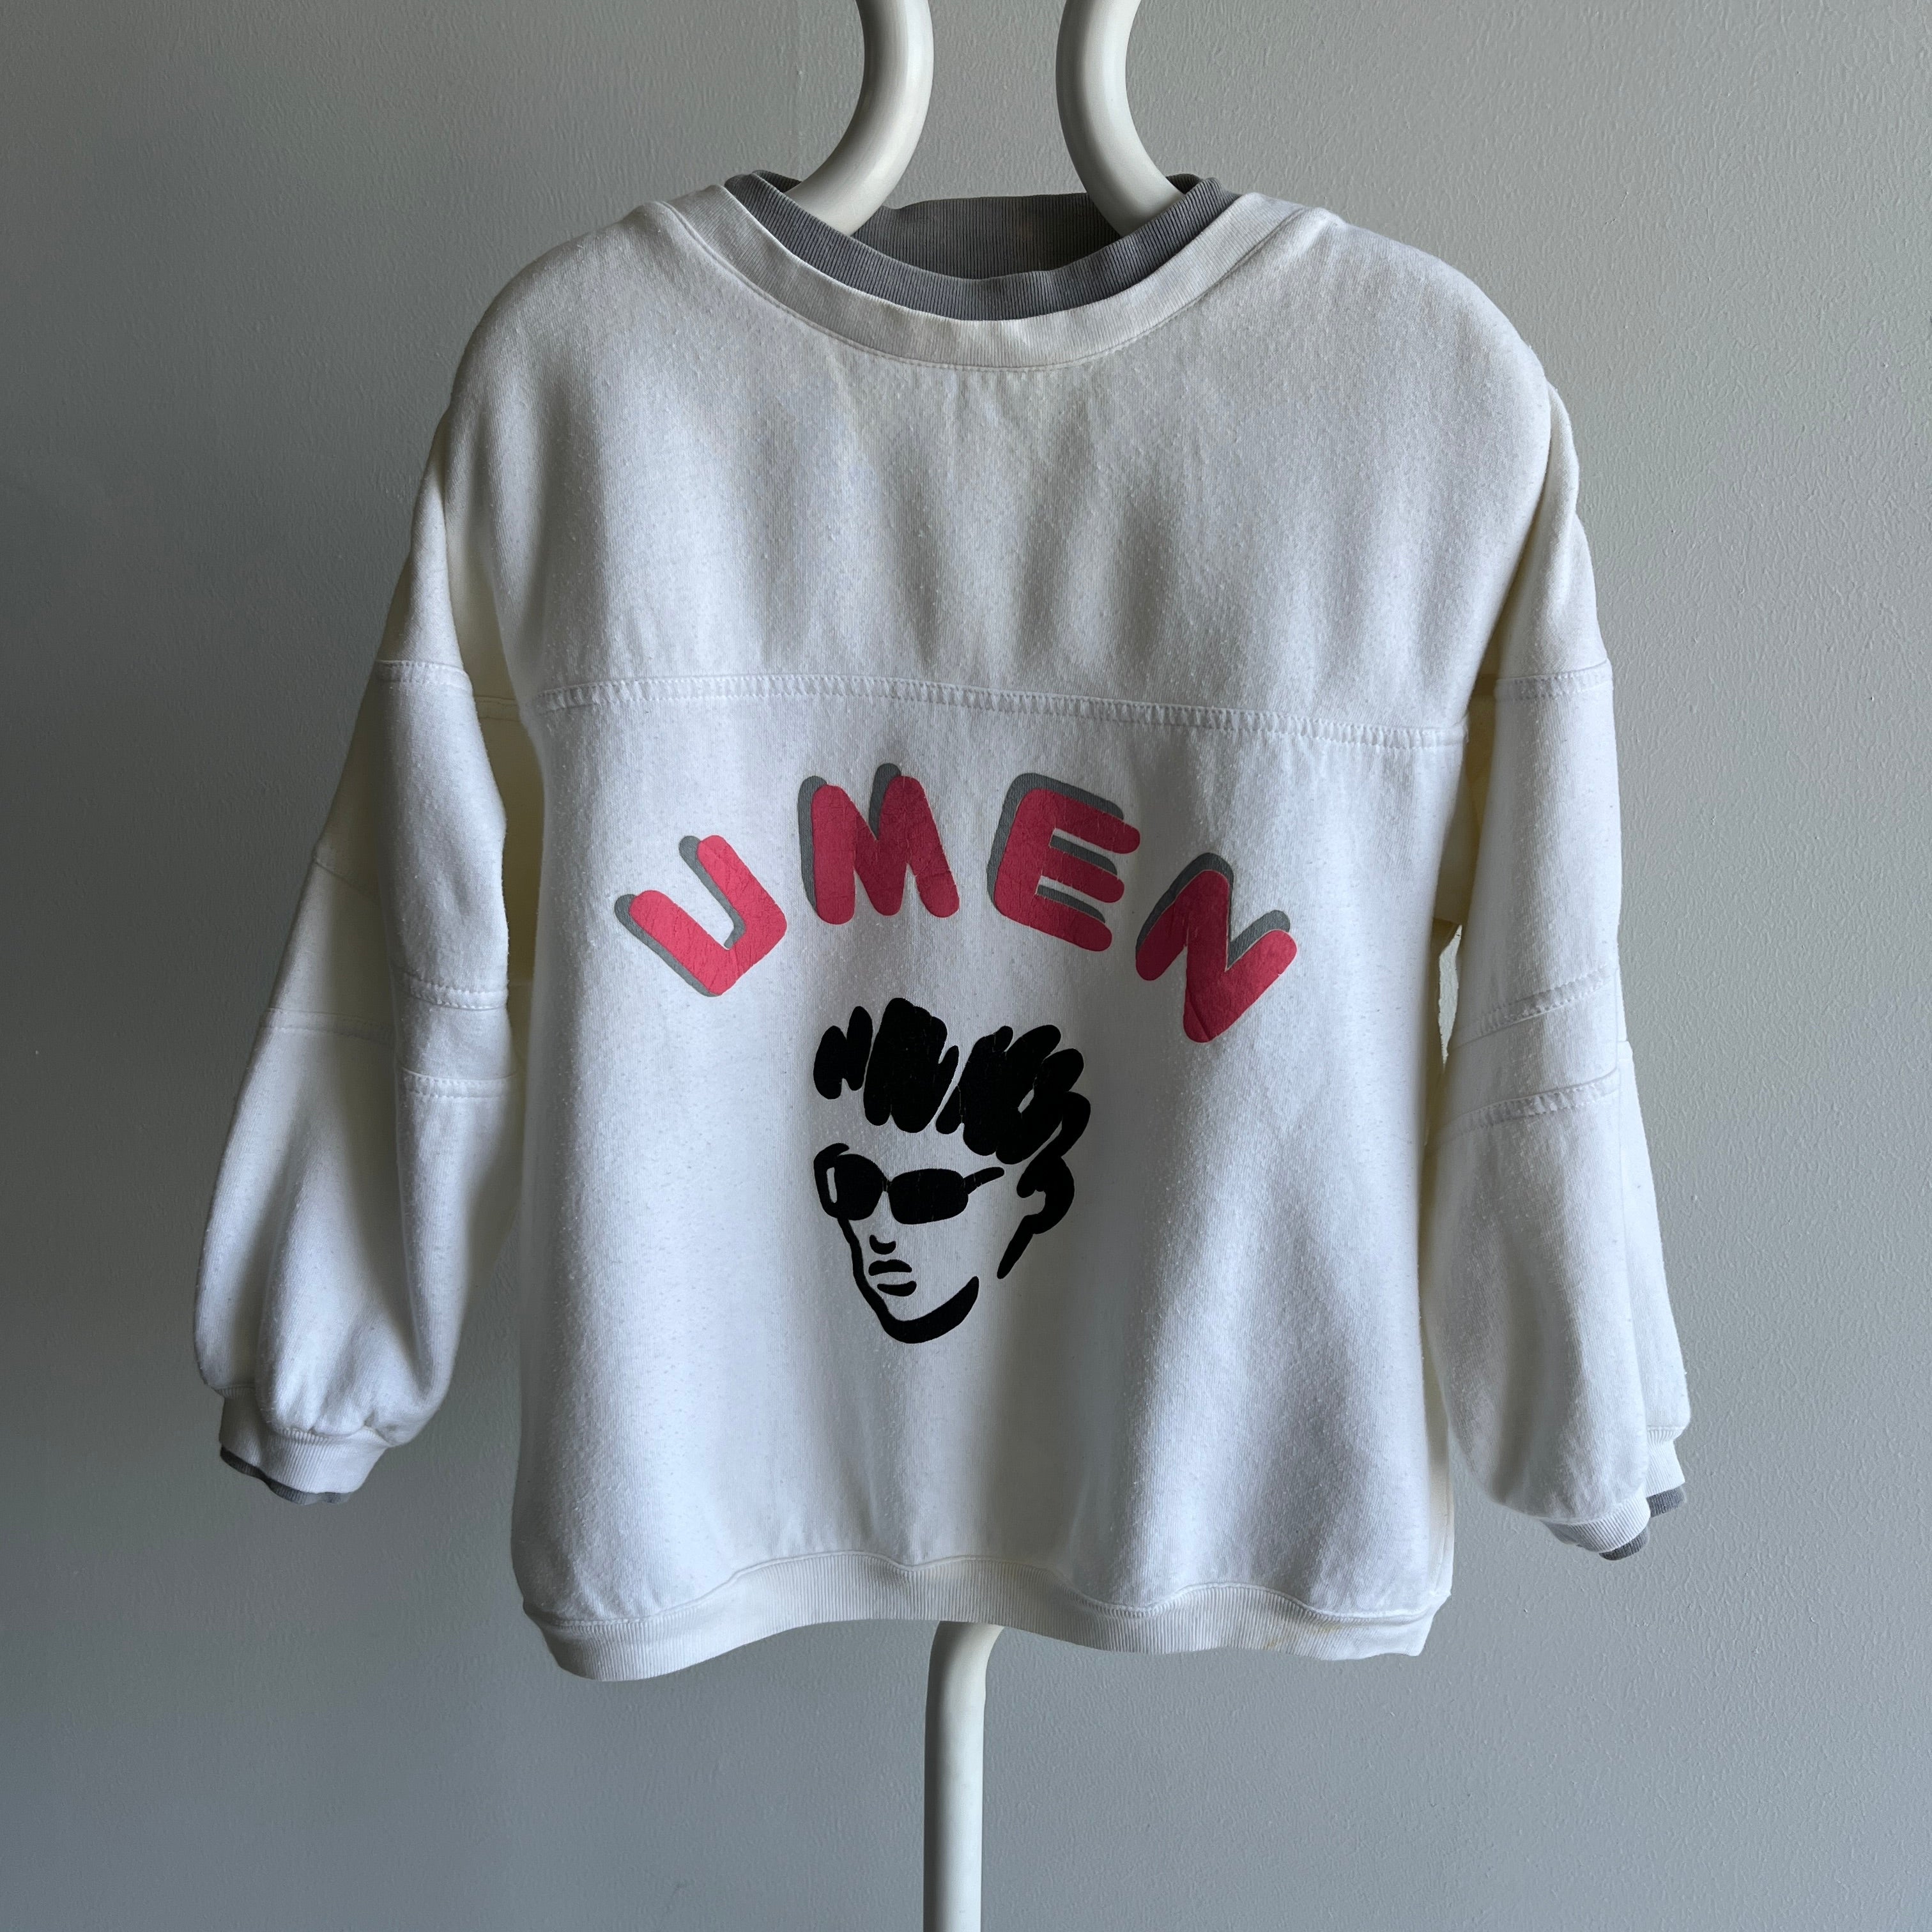 1980s Umen Brand Sweatshirt - WOW